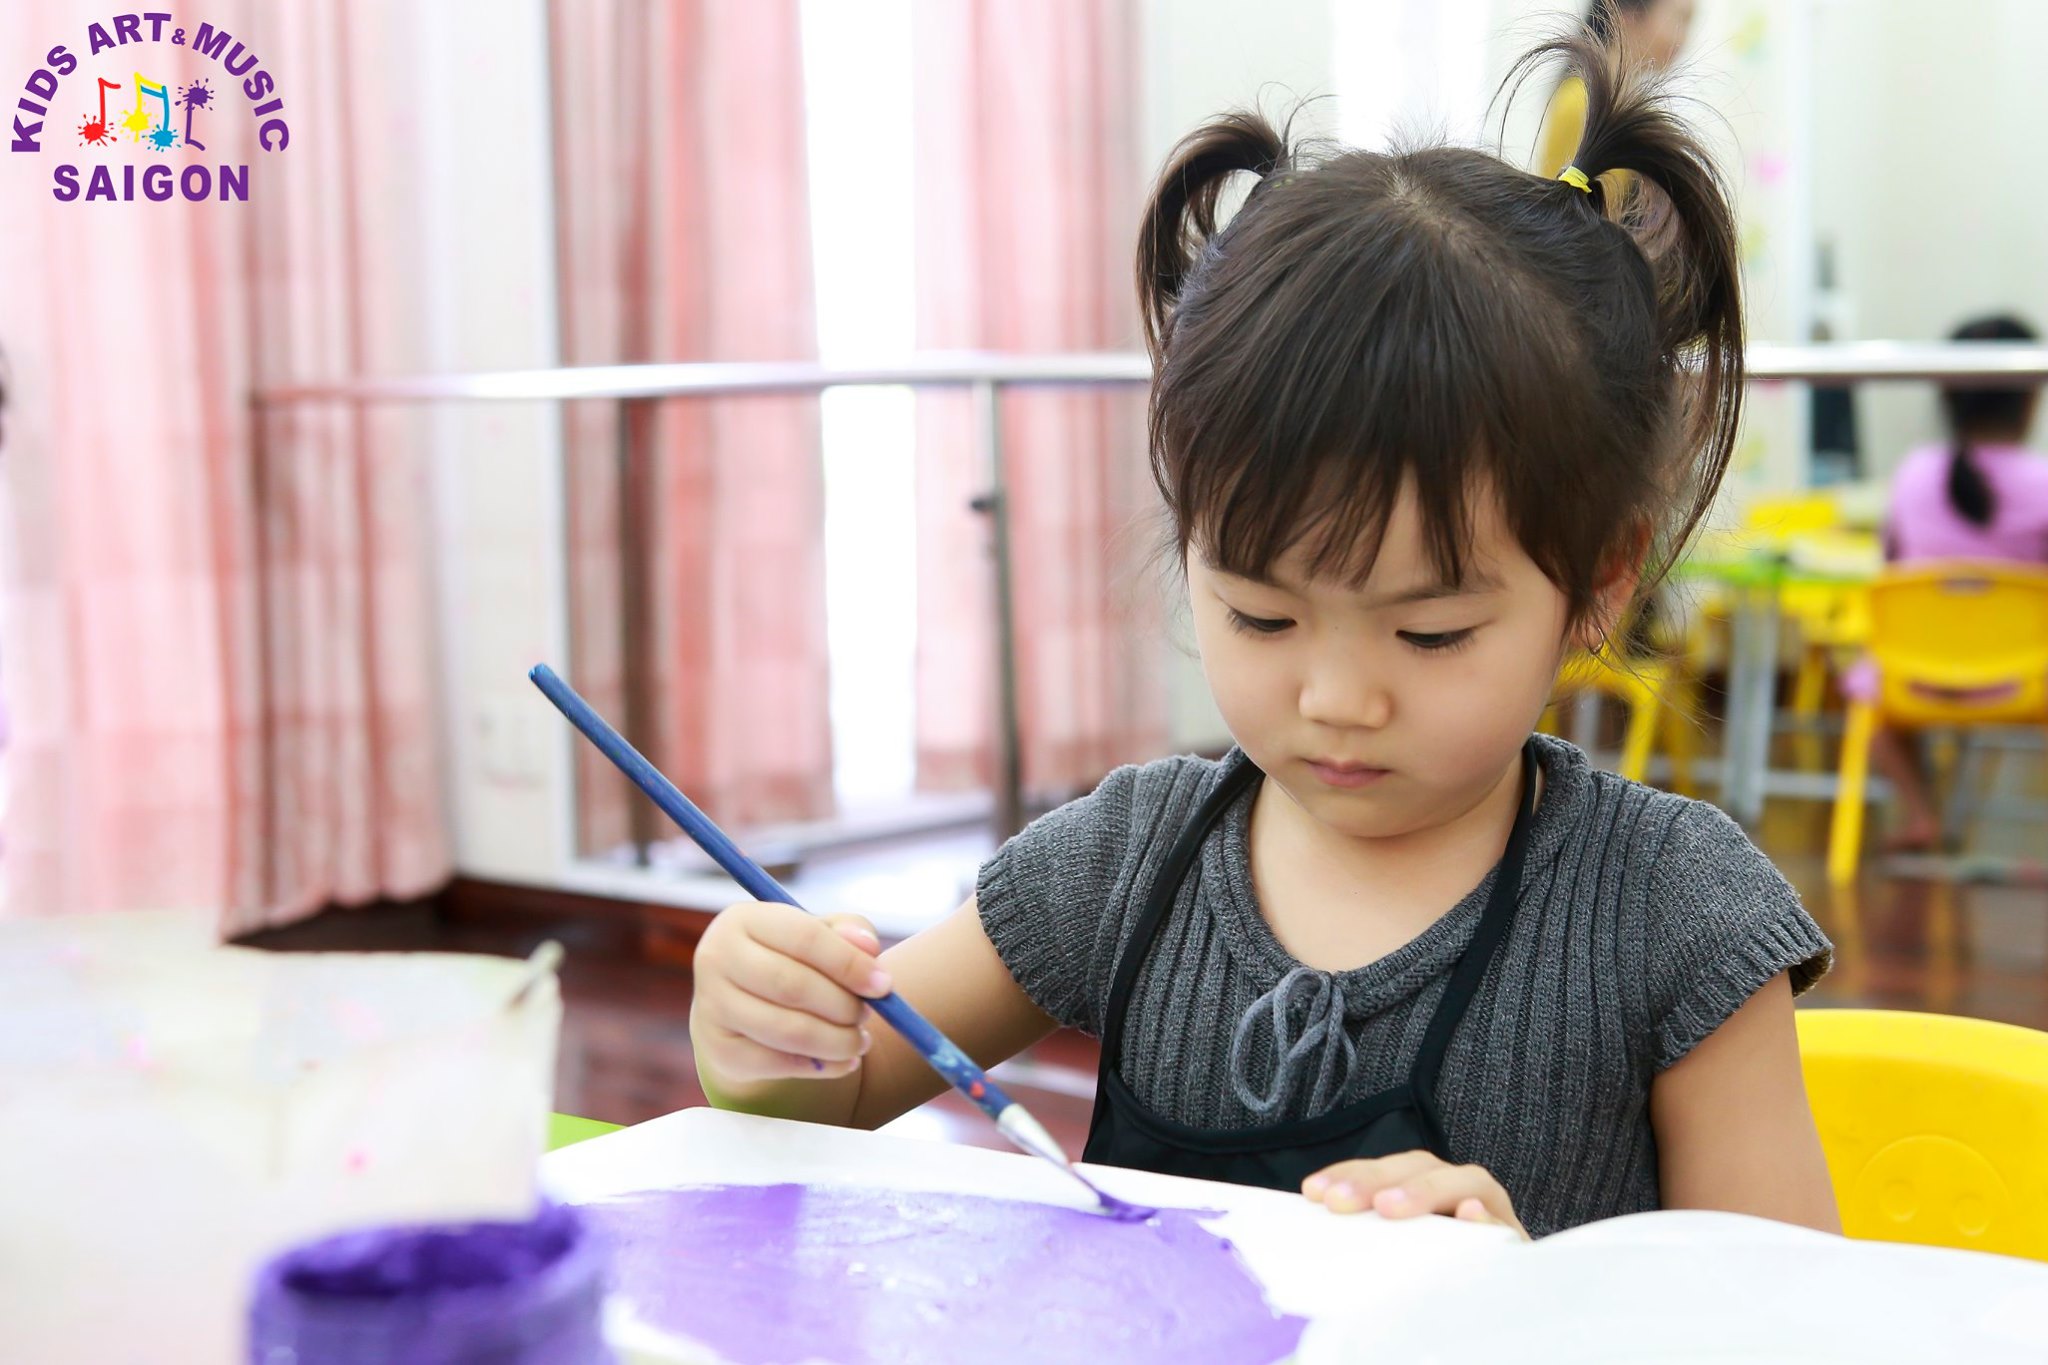 Lớp dạy vẽ cho trẻ em - Kids Art & Music Saigon TP.HCM hình ảnh 1